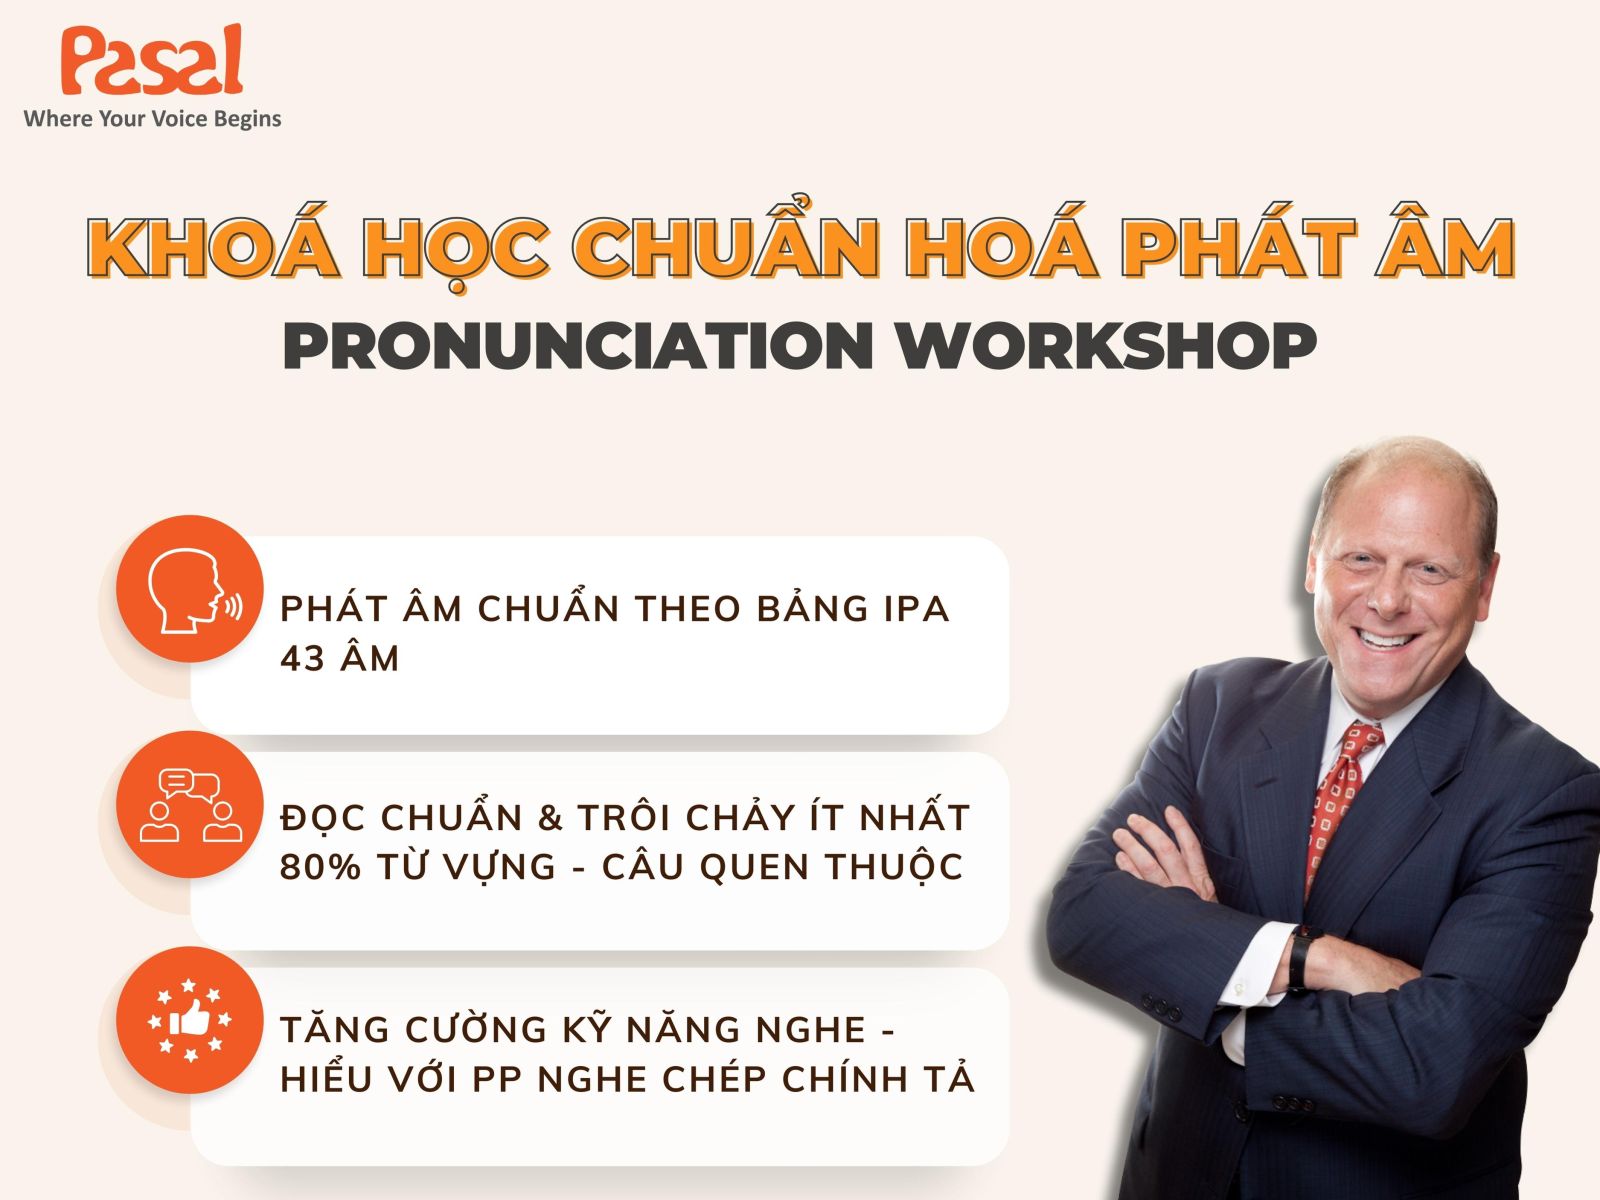 Phương pháp Pronunciation Workshop giúp chuẩn hóa phát âm tiếng Anh